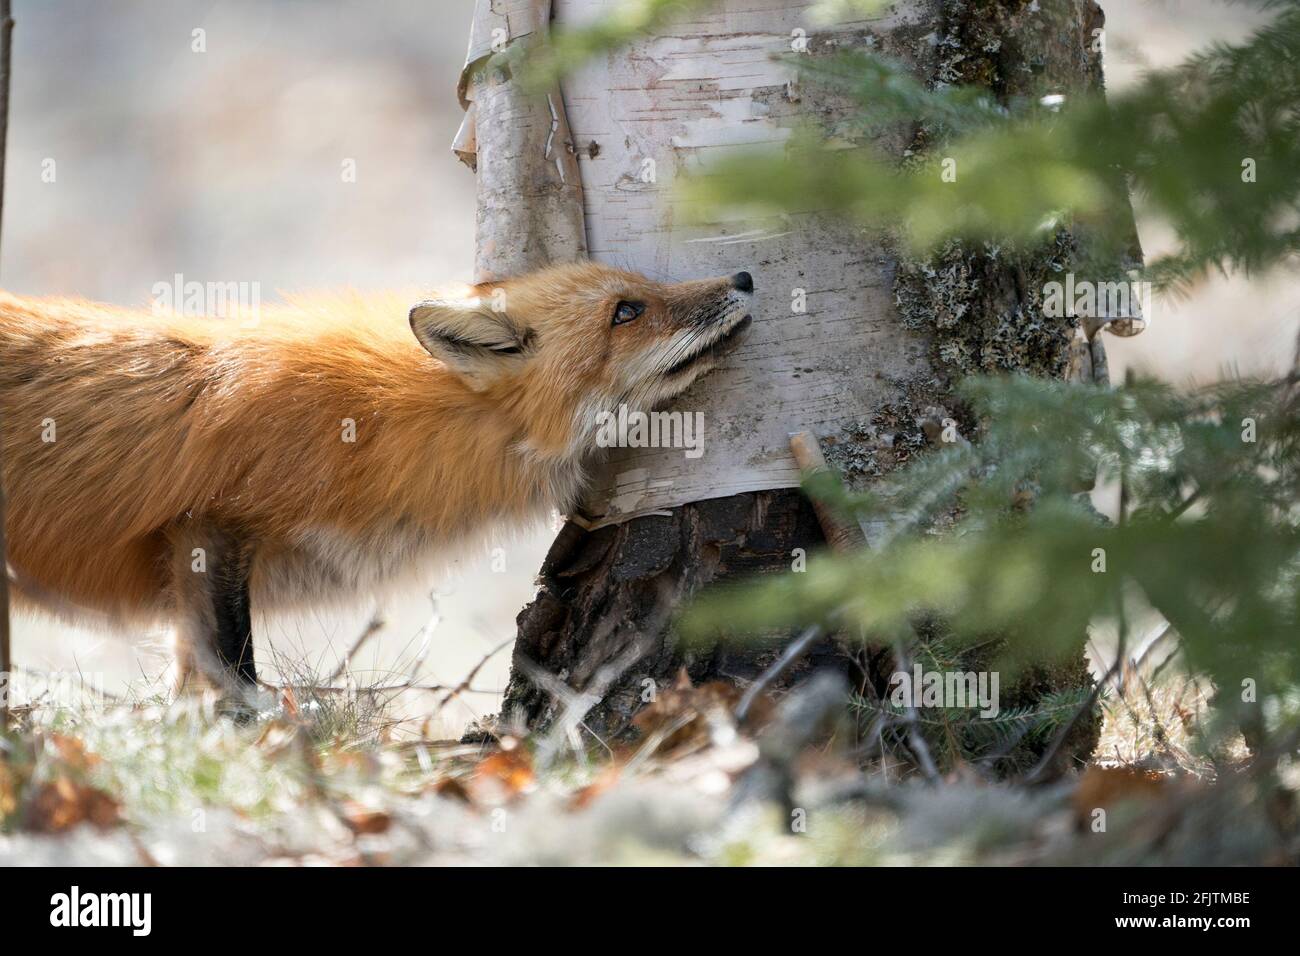 Vista de primer plano de la cabeza del zorro rojo en la temporada de primavera que abarca un árbol de abedul en su entorno y hábitat con un fondo borroso. Imagen de Fox. Foto de stock